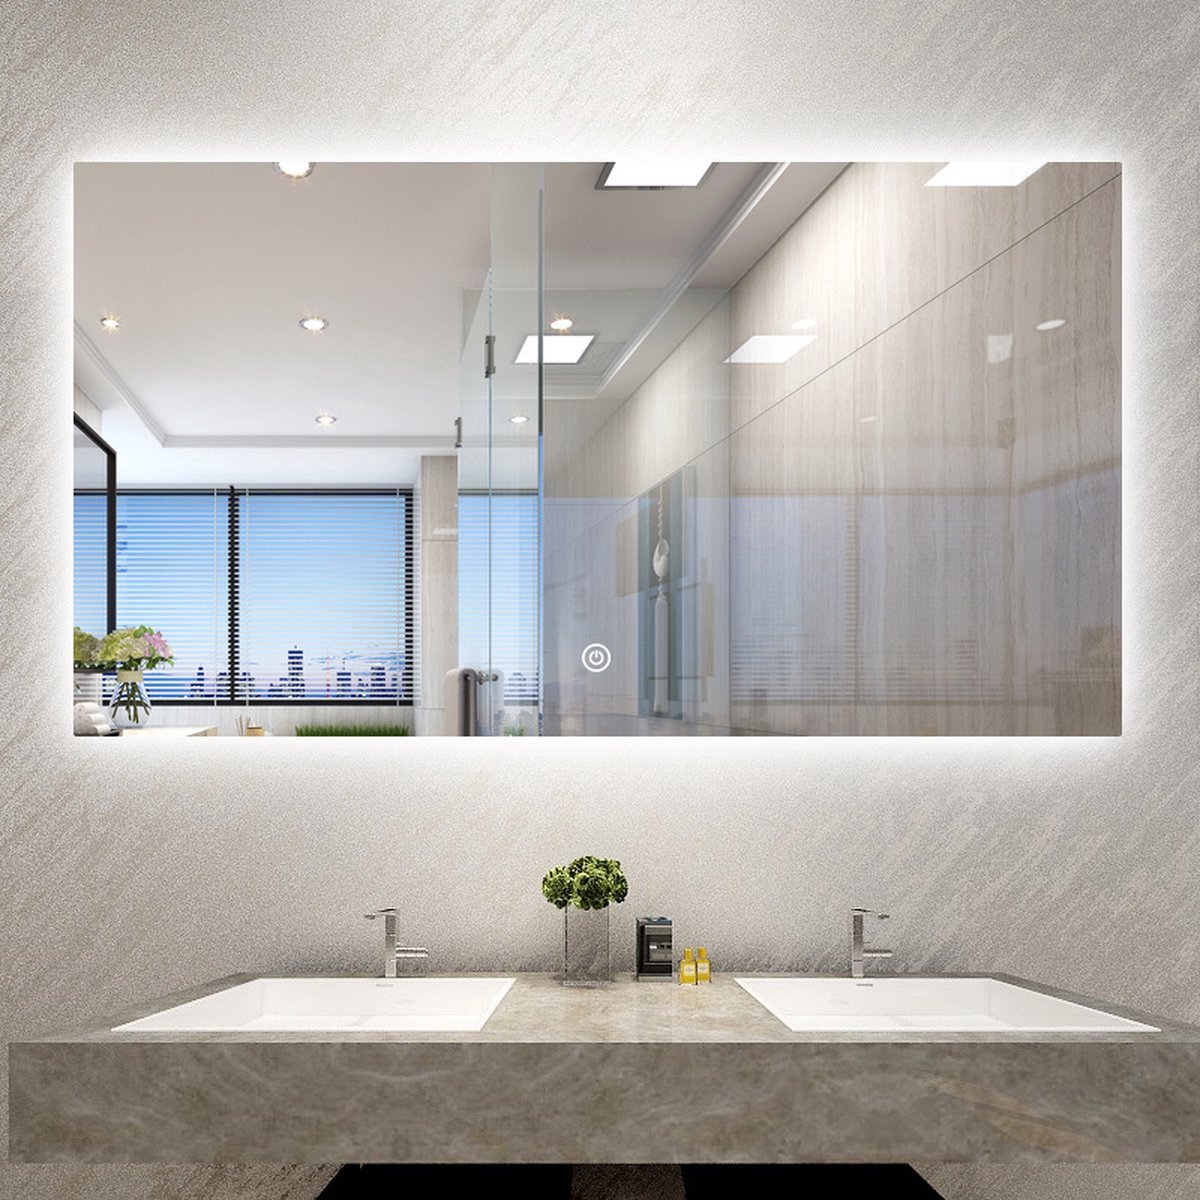 Badkamerspiegel - Badkamerspiegel Met Led Verlichting - Badkamerspiegels - Badkamerspiegel met Verlichting - Anti Condens - 120 cm